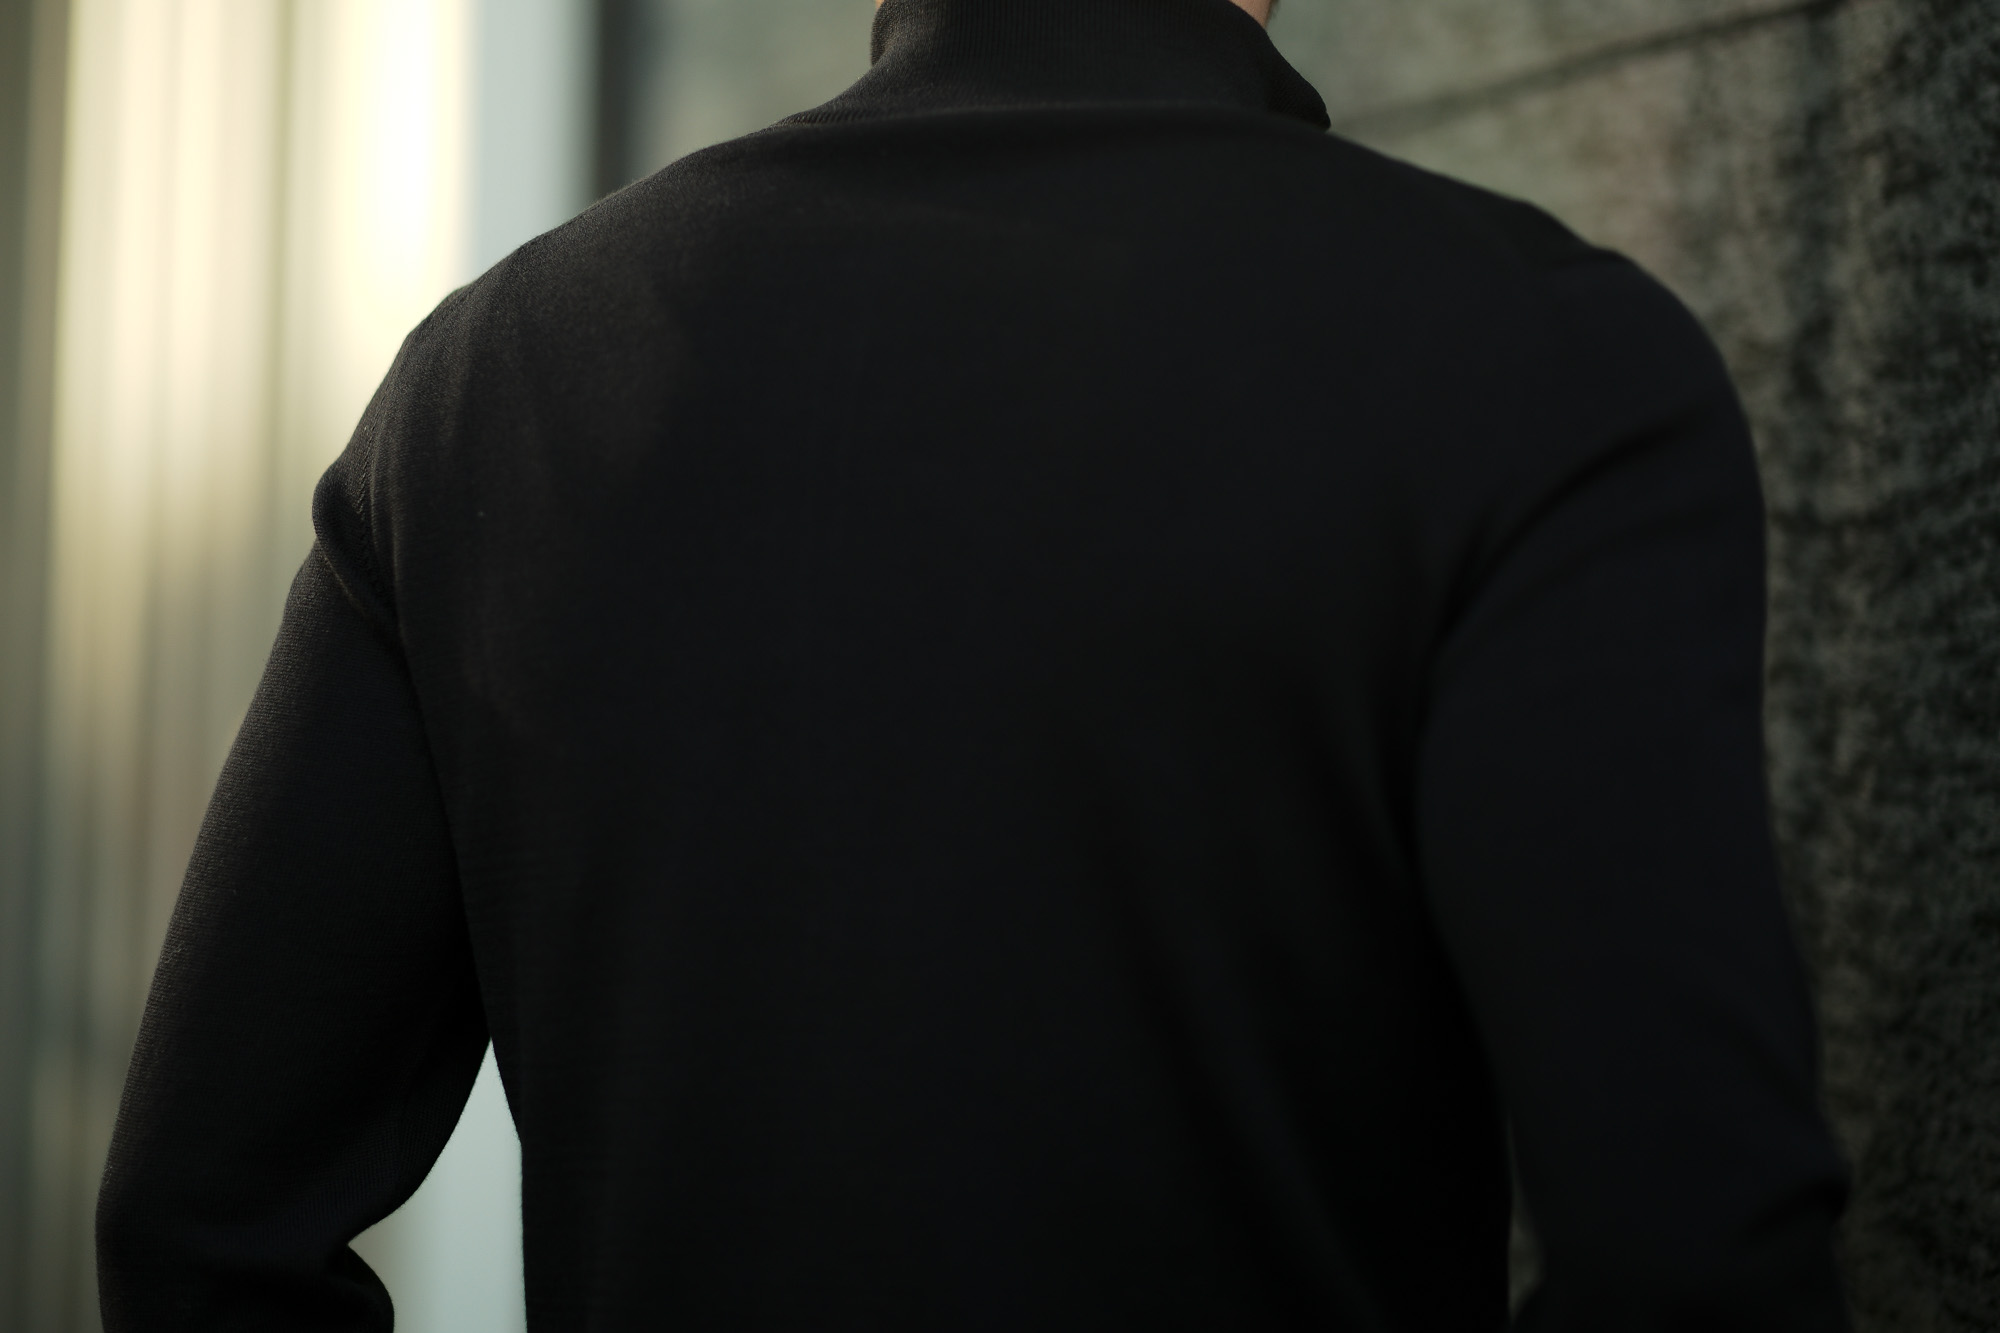 FEDELI (フェデーリ) Zip Up Cardigan (ジップアップ カーディガン) スーピマコットン ニット カーディガン BLACK  (ブラック・36) made in italy (イタリア製) 2019 春夏新作 – 正規通販・名古屋のメンズセレクトショップ Alto e  Diritto